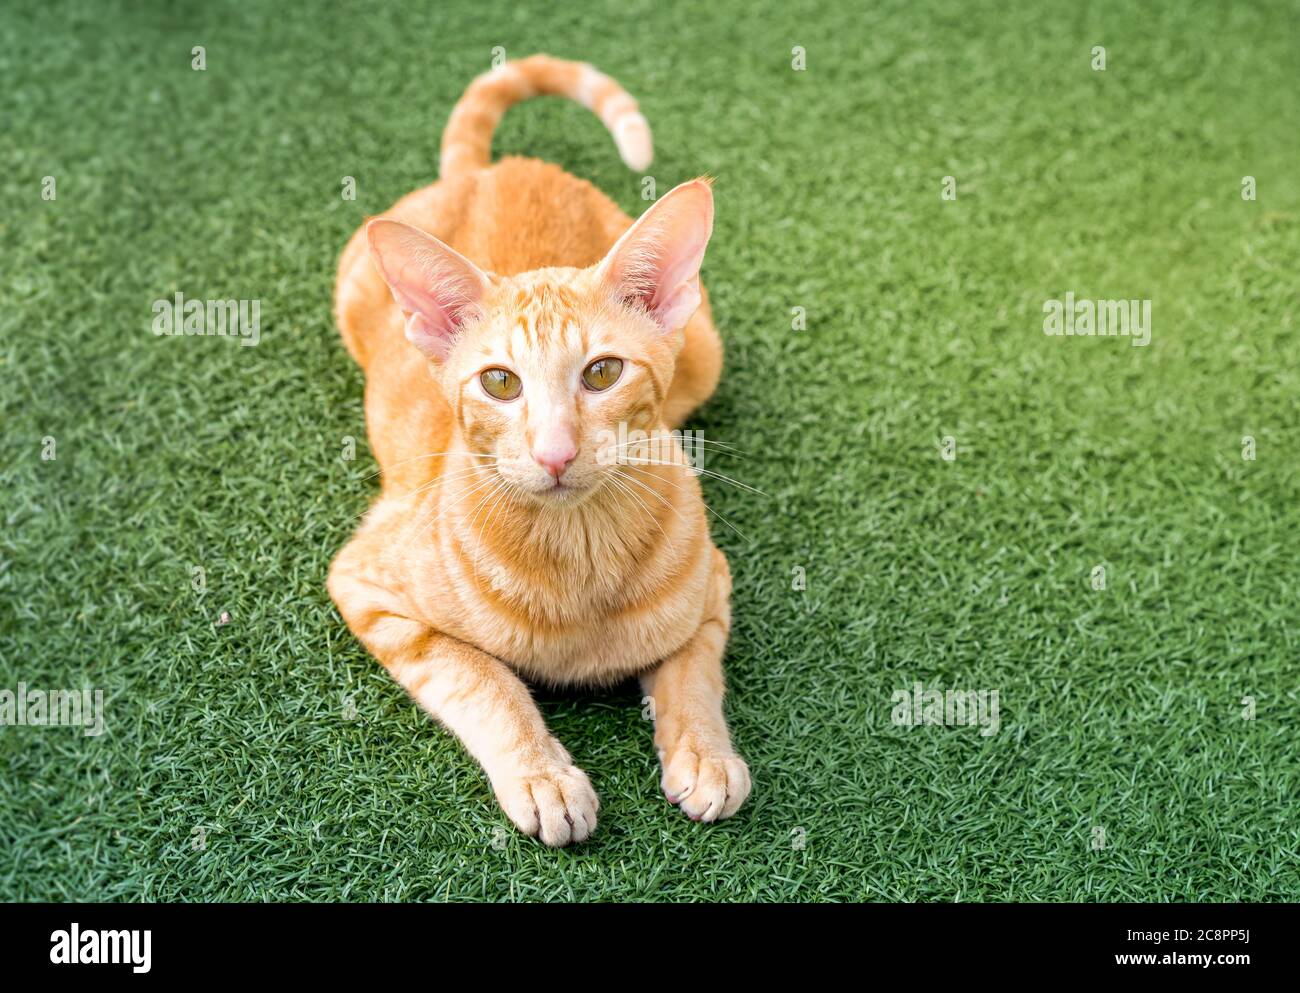 Gatto rosso orientale con orecchie grandi, occhi chiari e naso lungo sul tappeto verde. Foto Stock